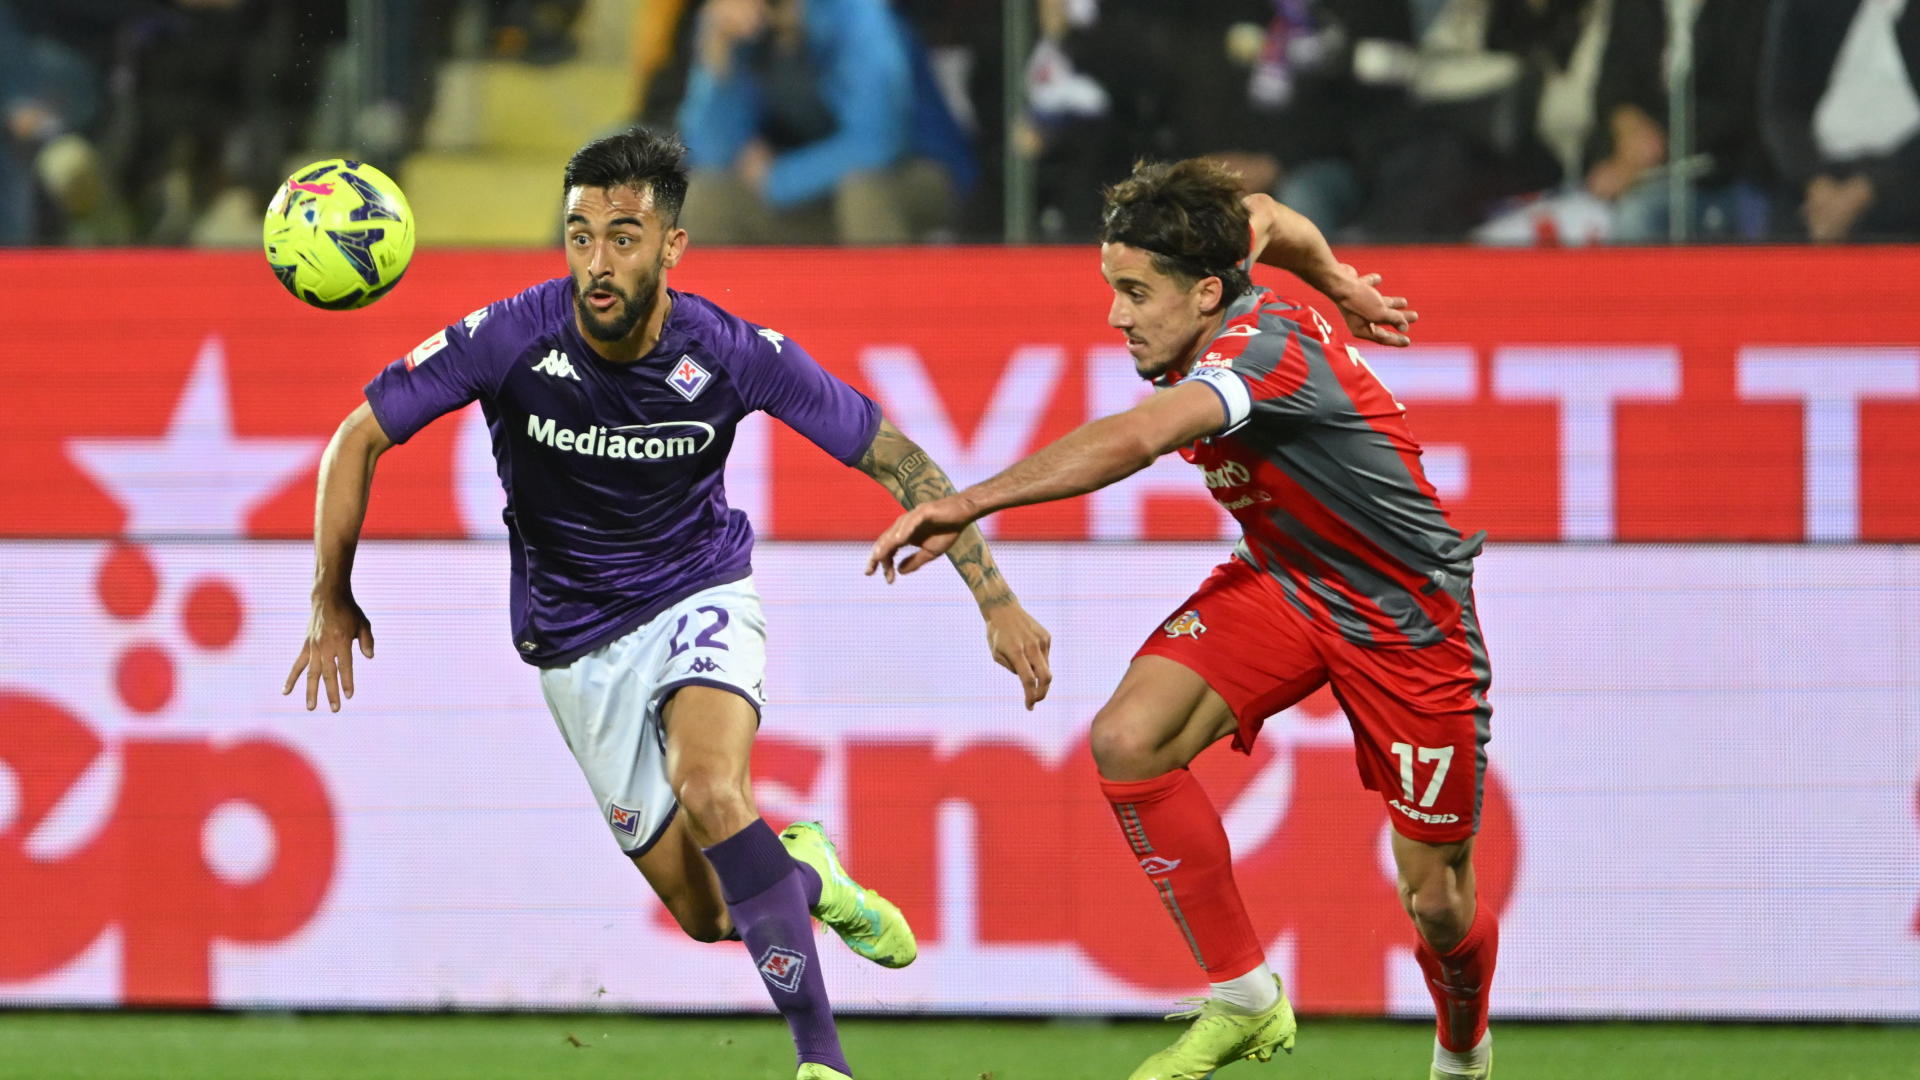 Fiorentina 0-0 Cremonese (2-0 agg)